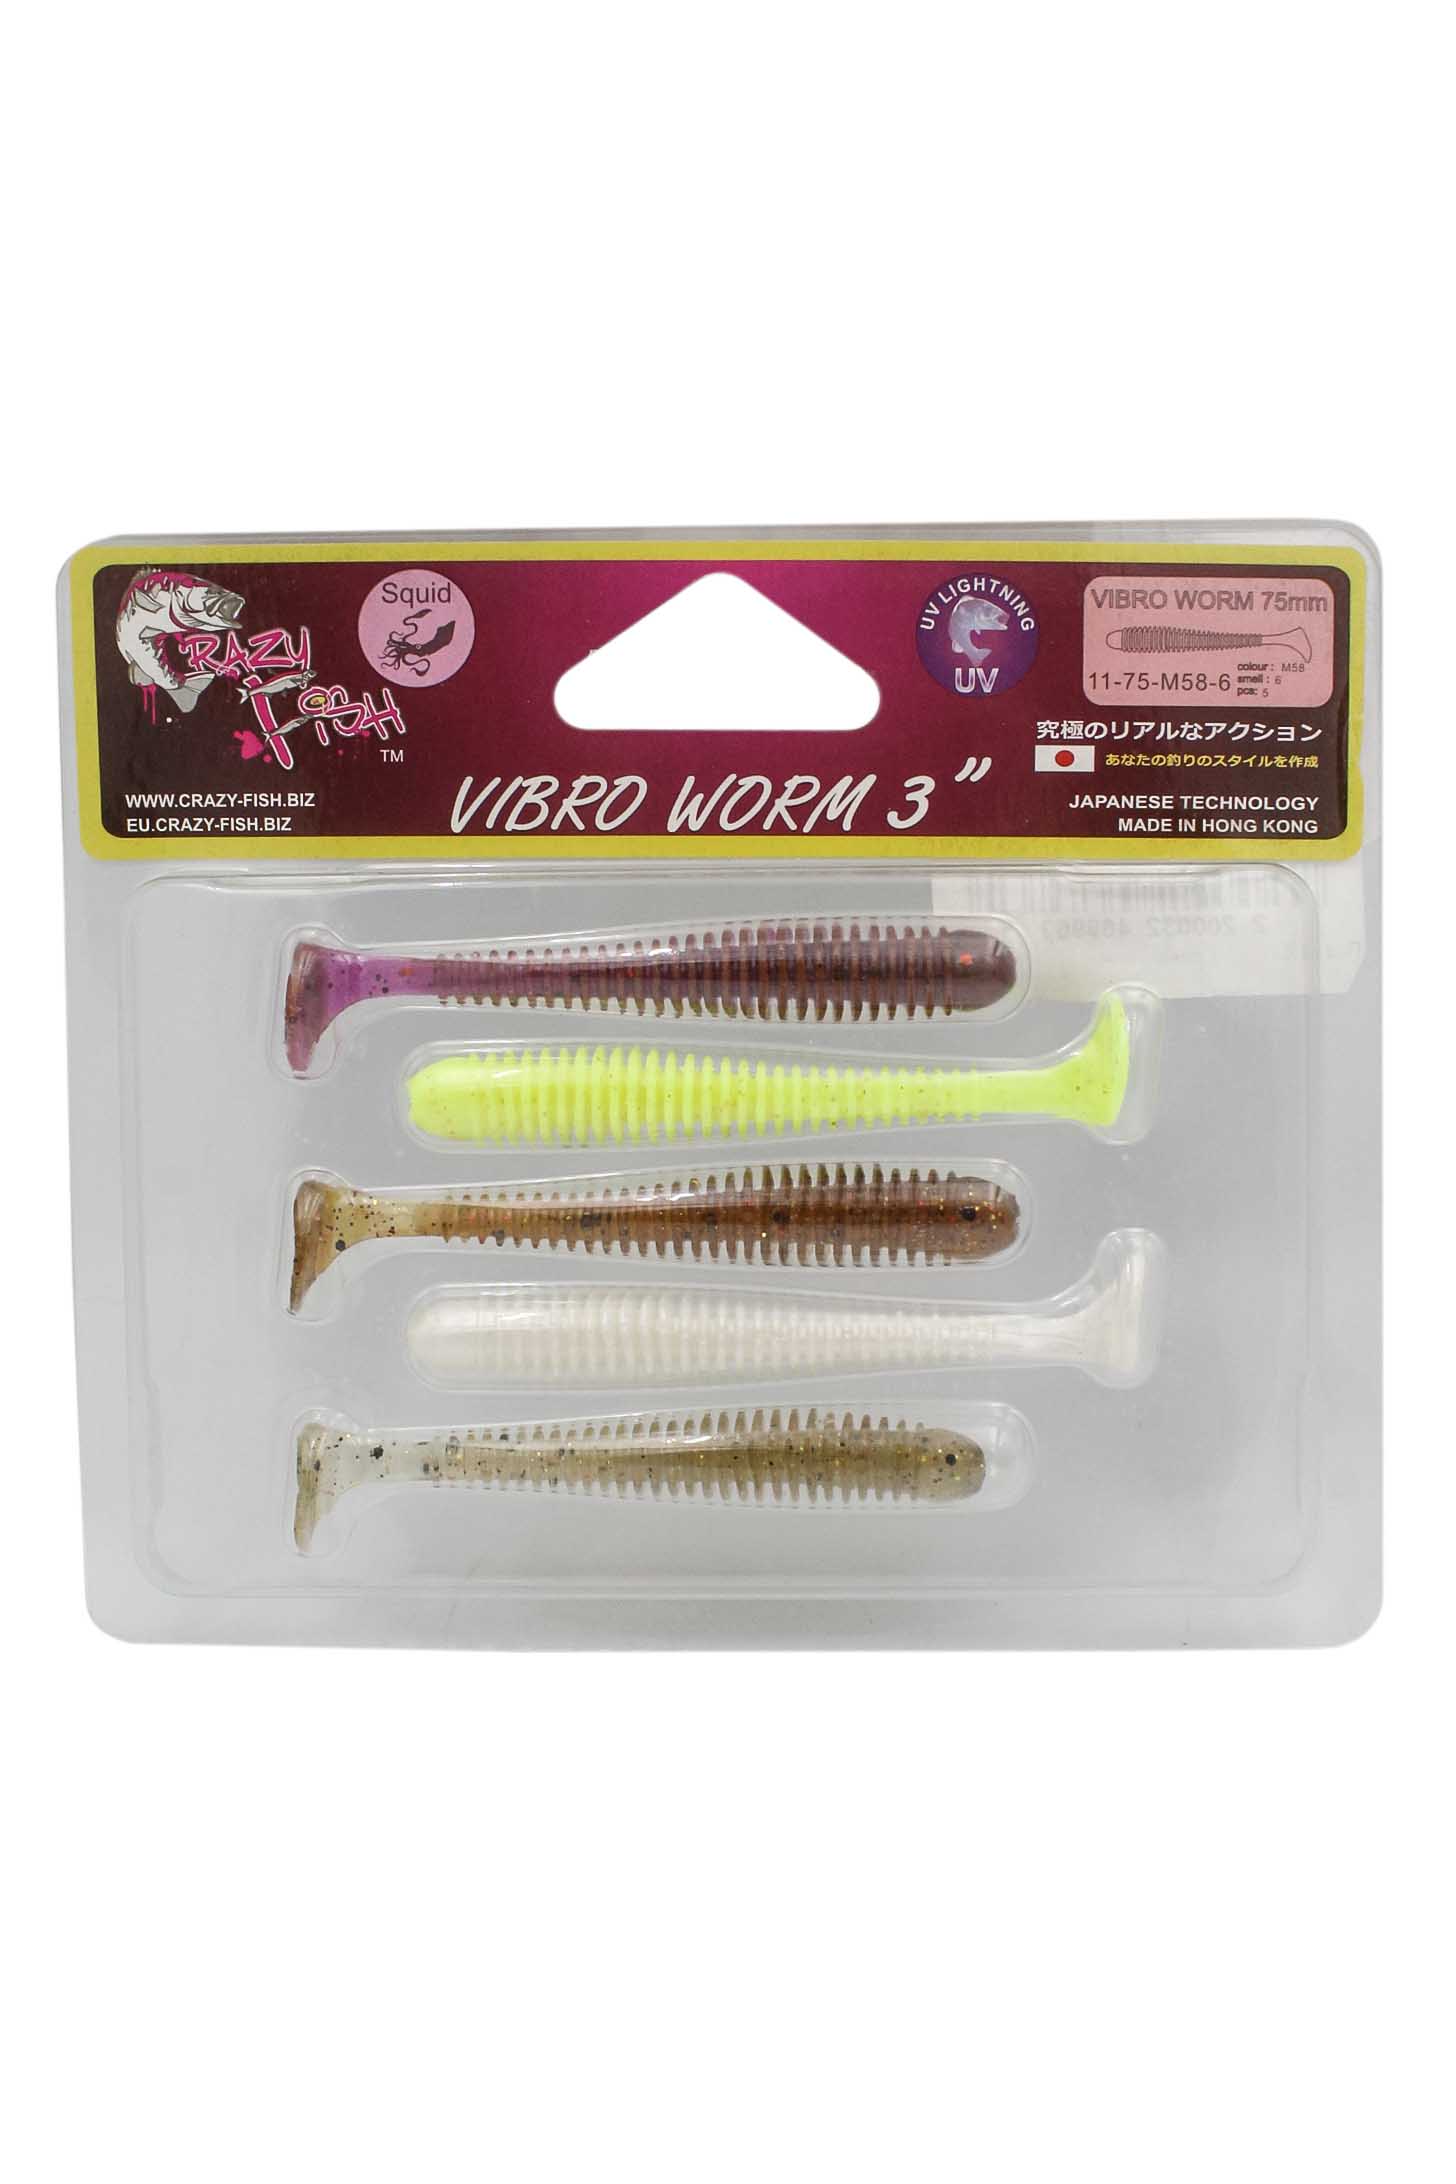 Приманка Crazy Fish Vibro worm 3'' 11-75-M58-6 - фото 1